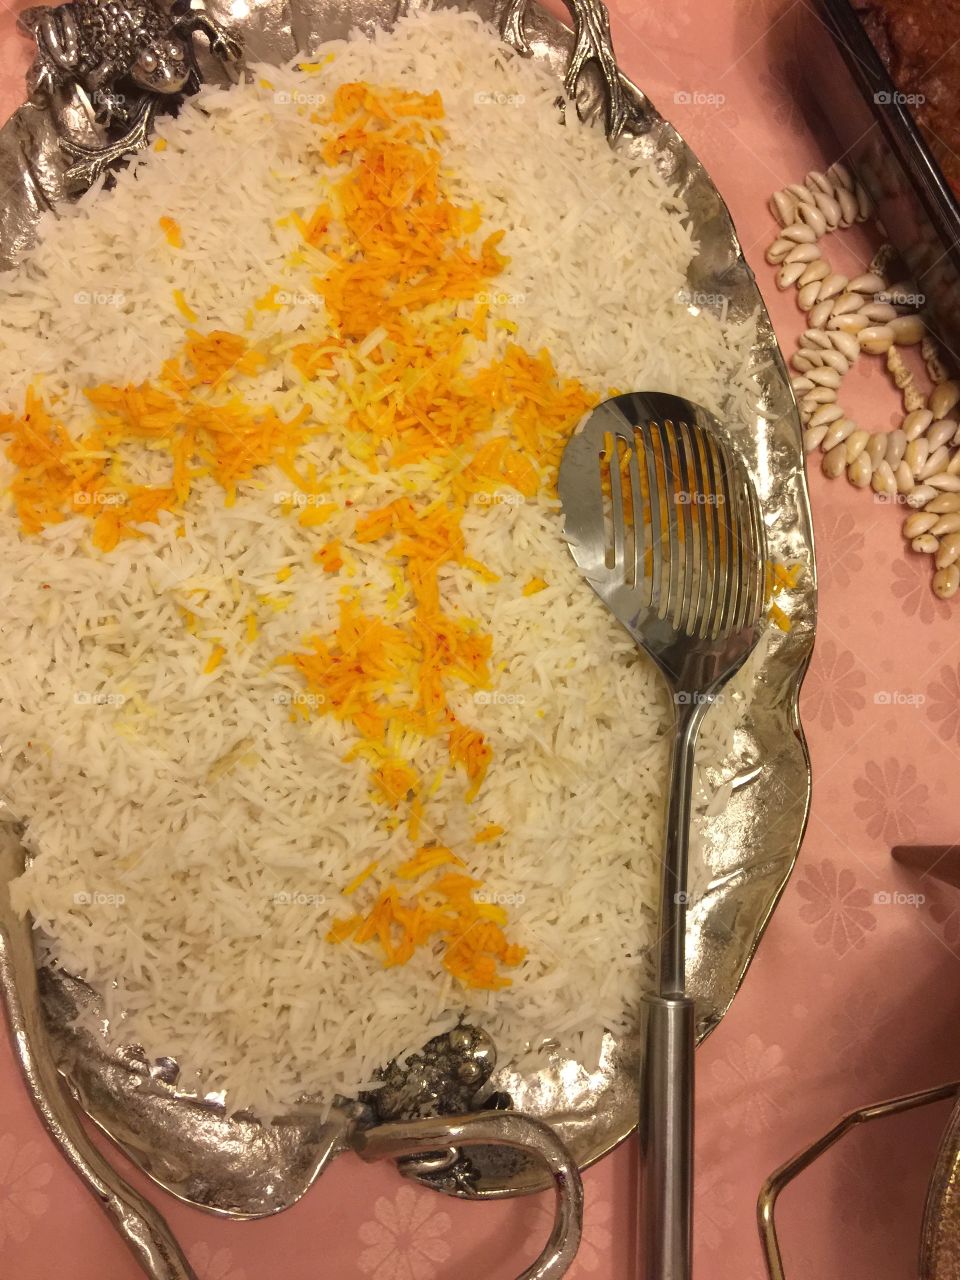 Saffron
Rice